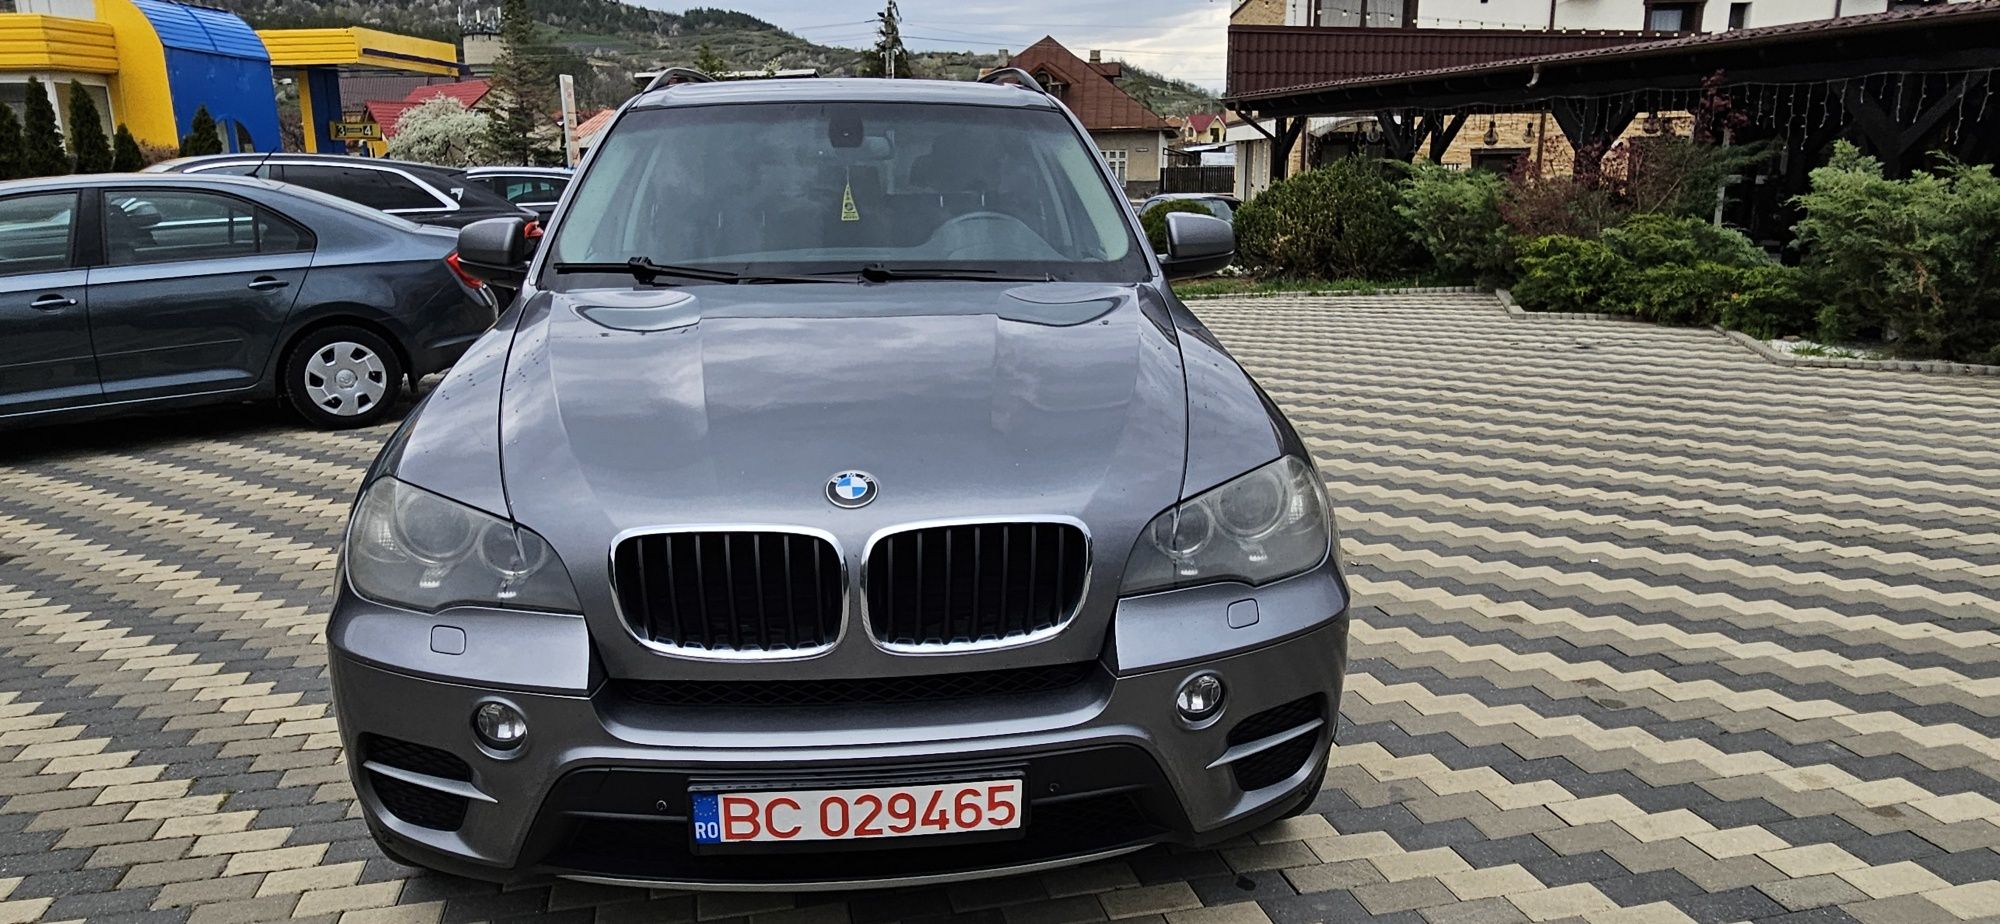 BMW x5 3 0 diesel 2011